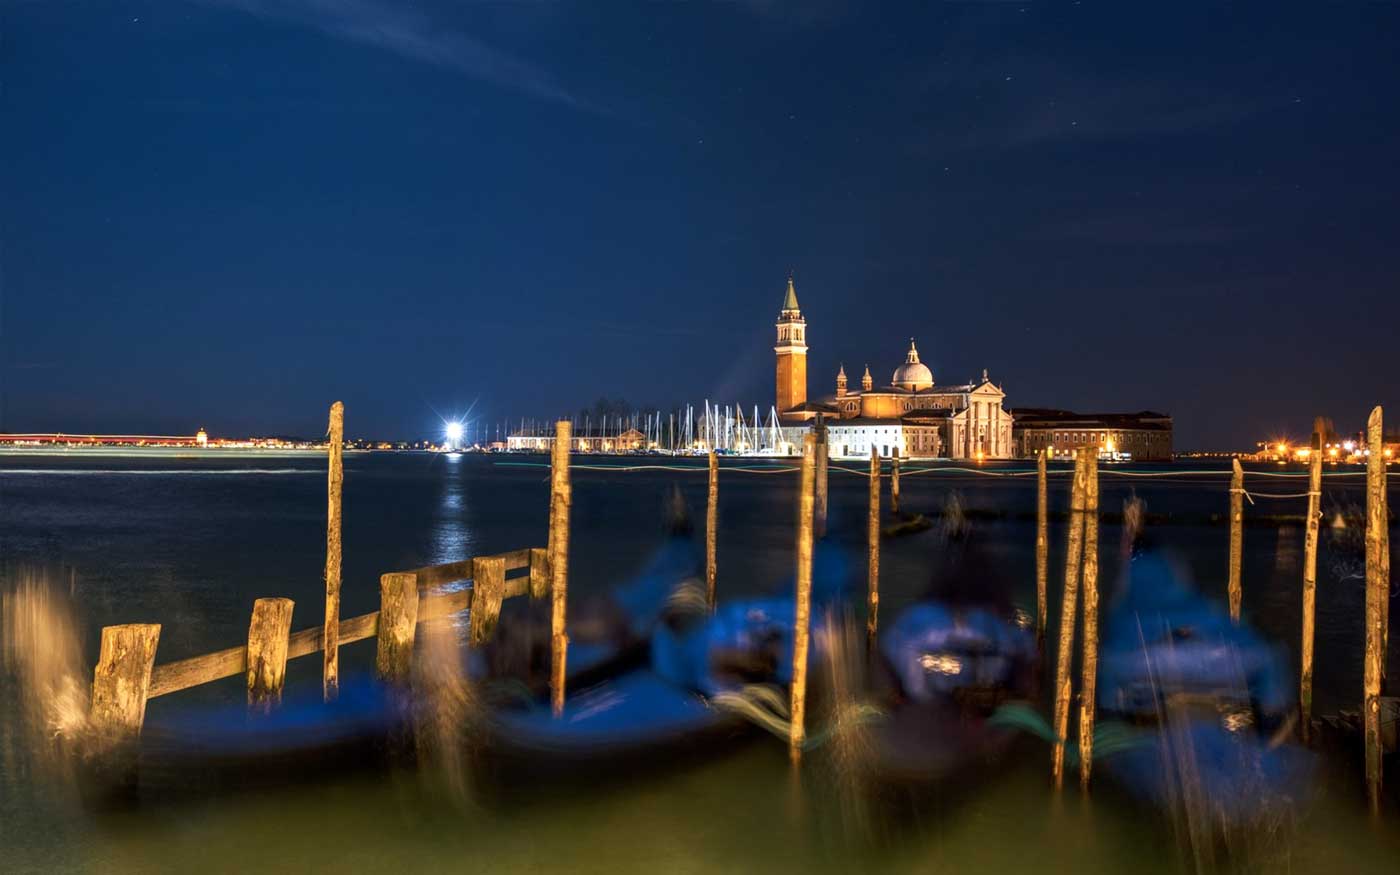 Venice After Dark